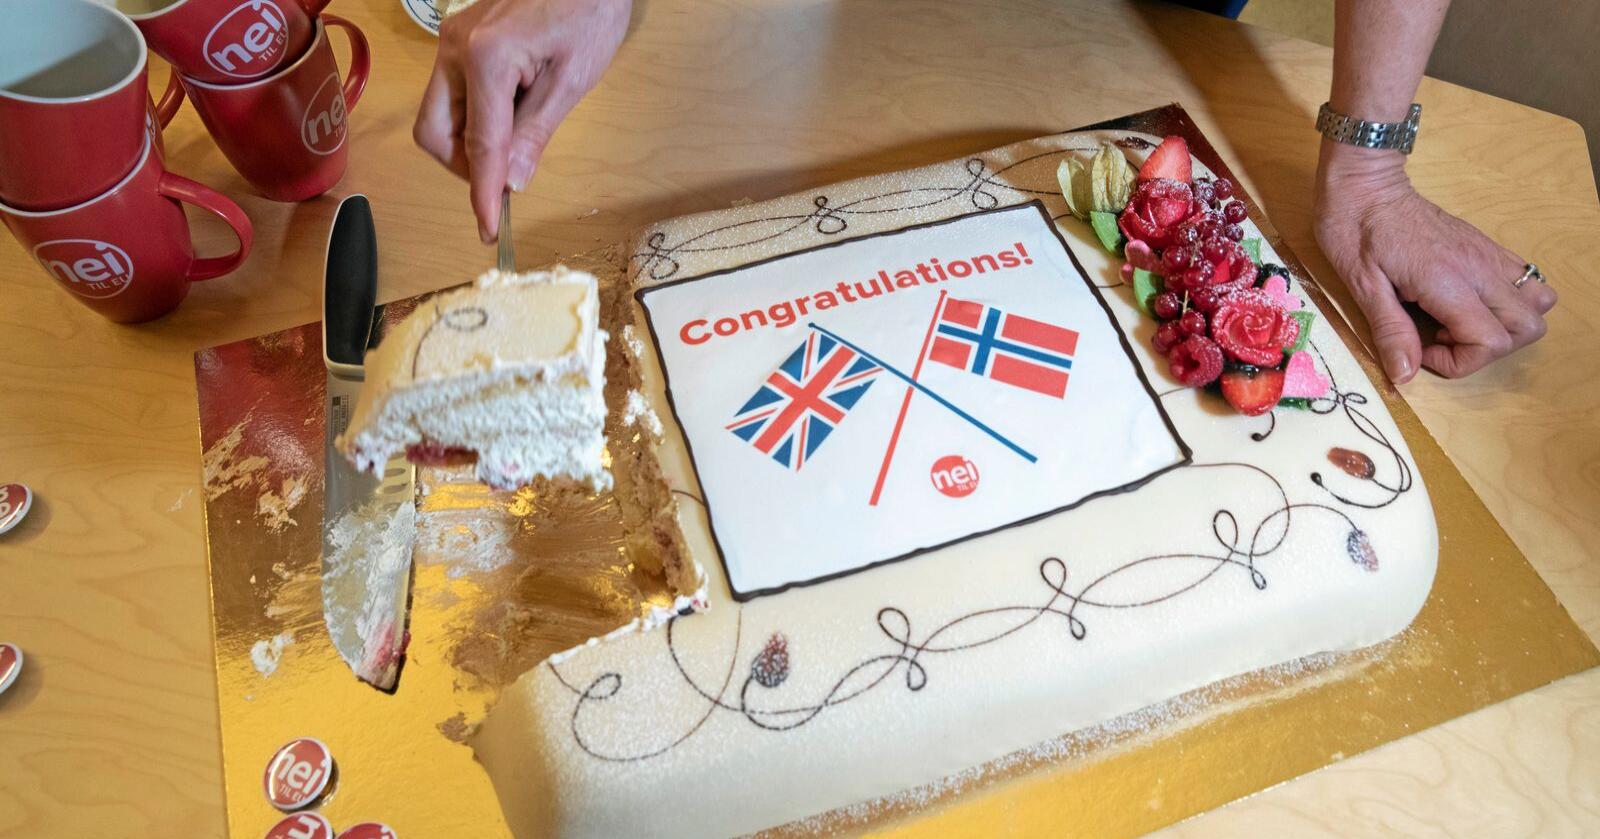 Feiret Brexit: Nei til EU markerte brexit med kake. Foto: Berit Roald/NTB scanpix